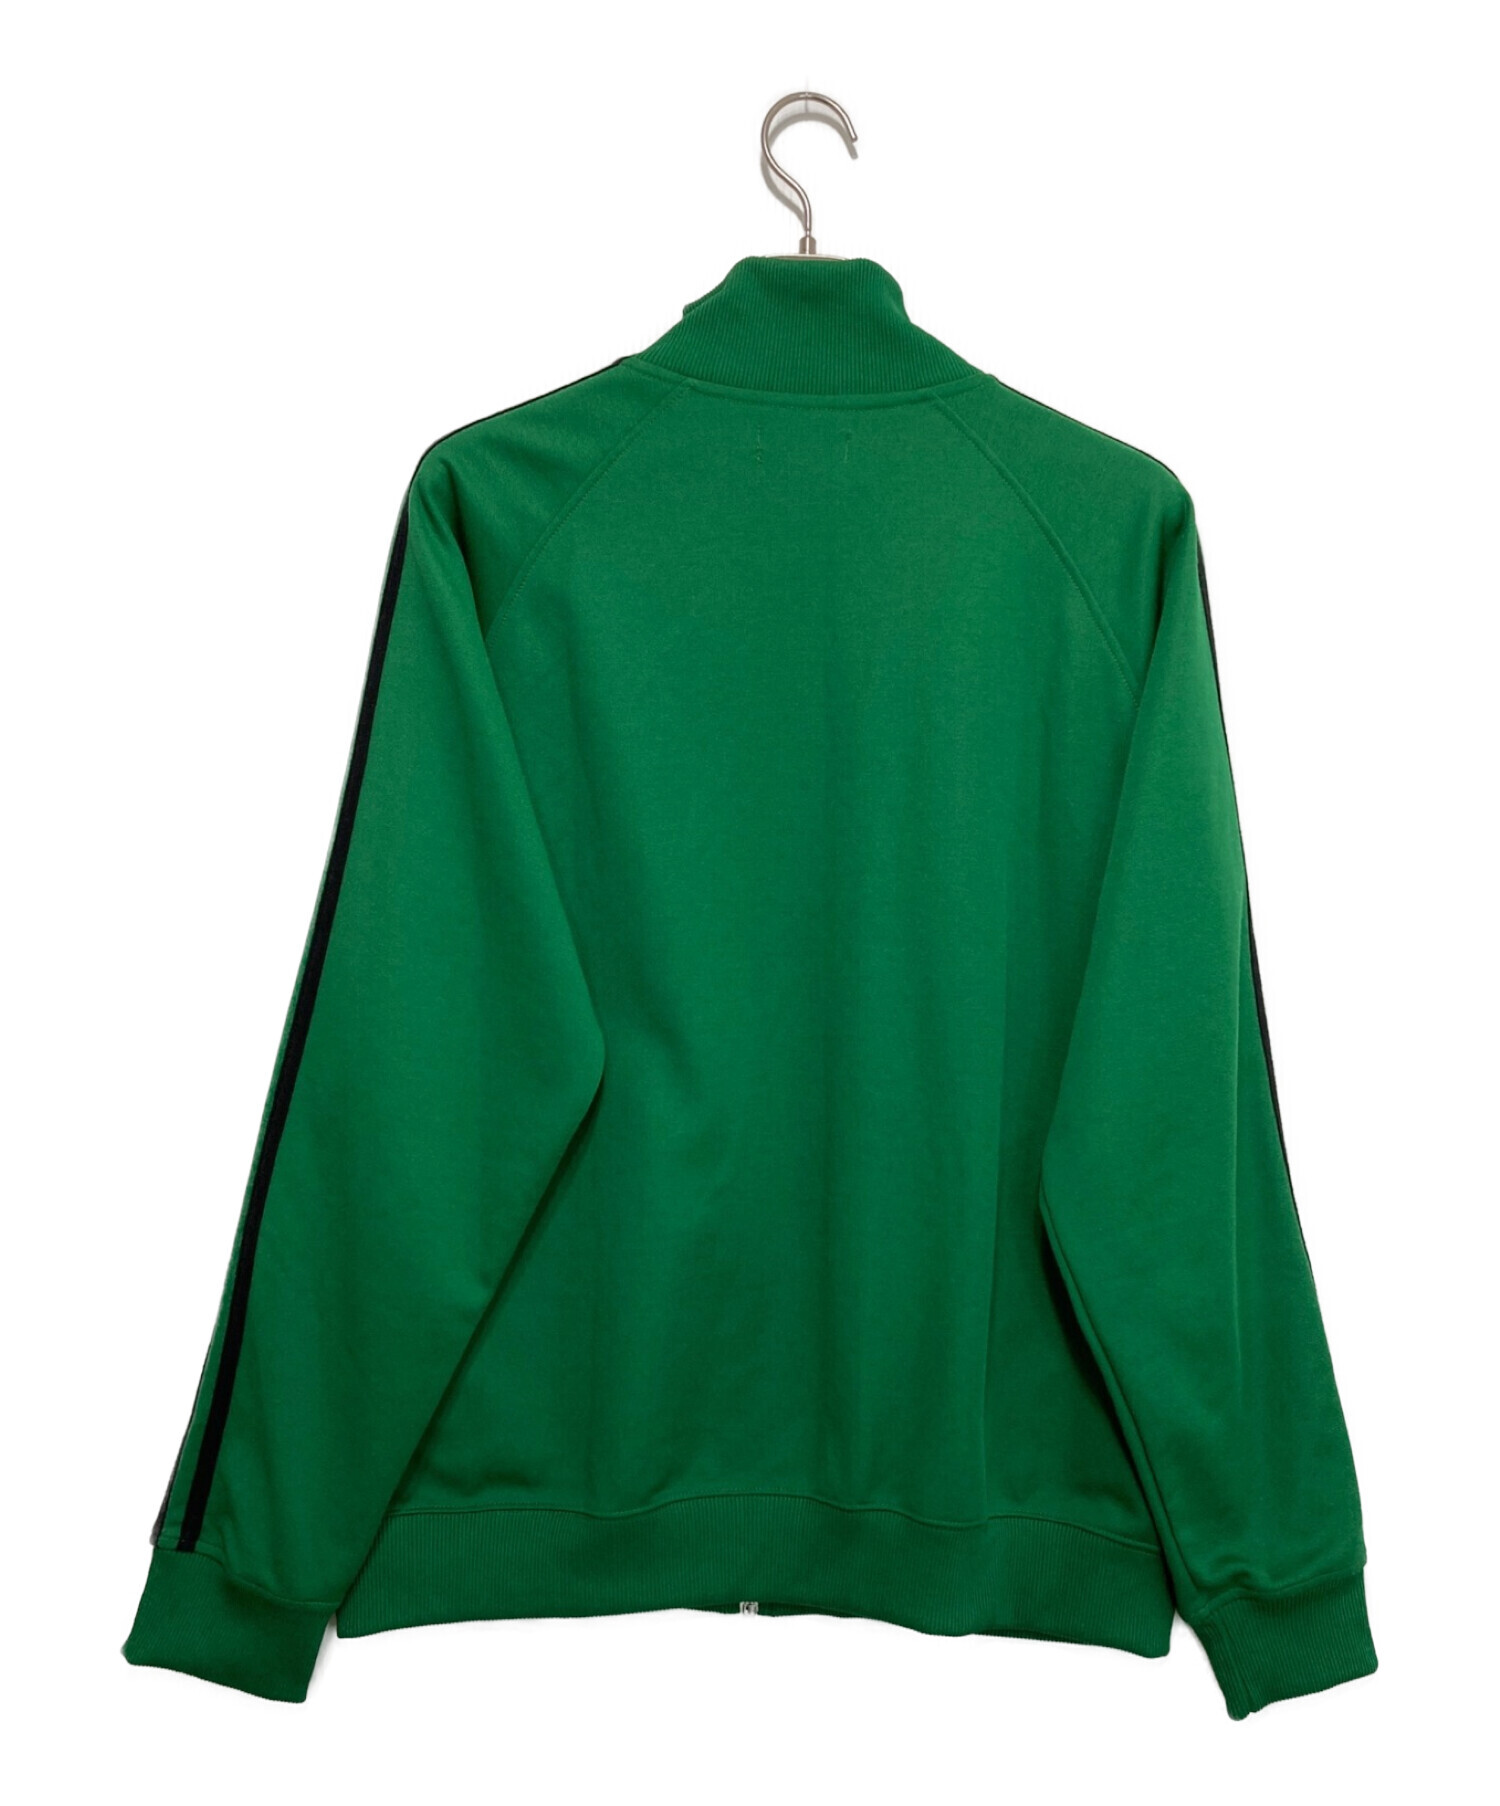 【最安値】FRED PERRY トラックジャケット グリーン Lサイズ 緑